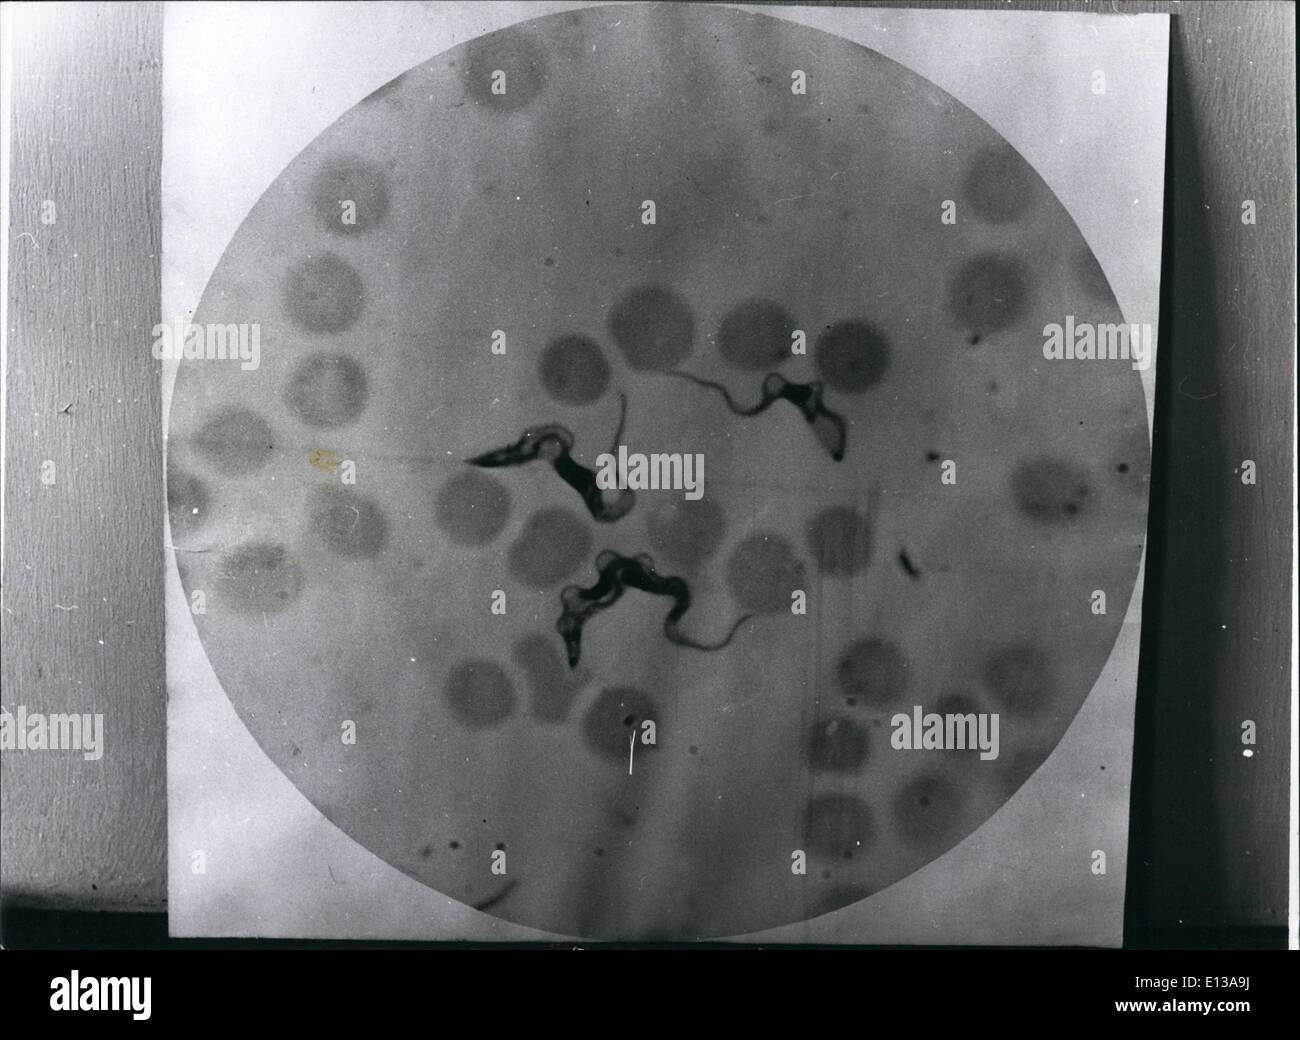 29. Februar 2012 - T. rhodesiense, die Trypanosomen der Krankheit, unter der roten Blutkörperchen eine Stichprobe von Blut unter dem Mikroskop gesehen. Stockfoto